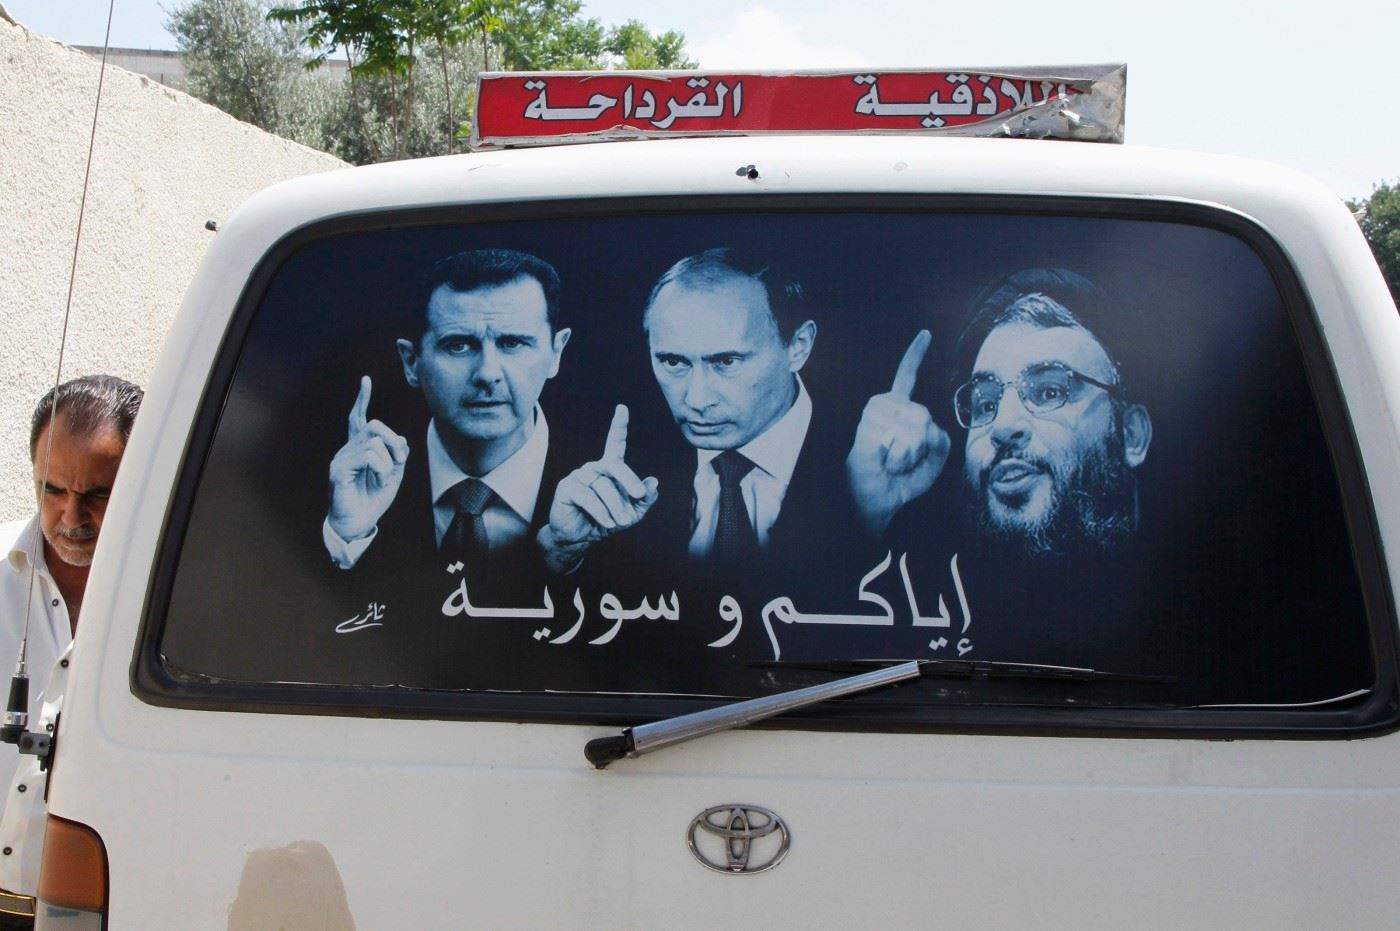 روسيا تدافع بقوة عن "حزب الله" وتشيد به: وجوده شرعي في سوريا!